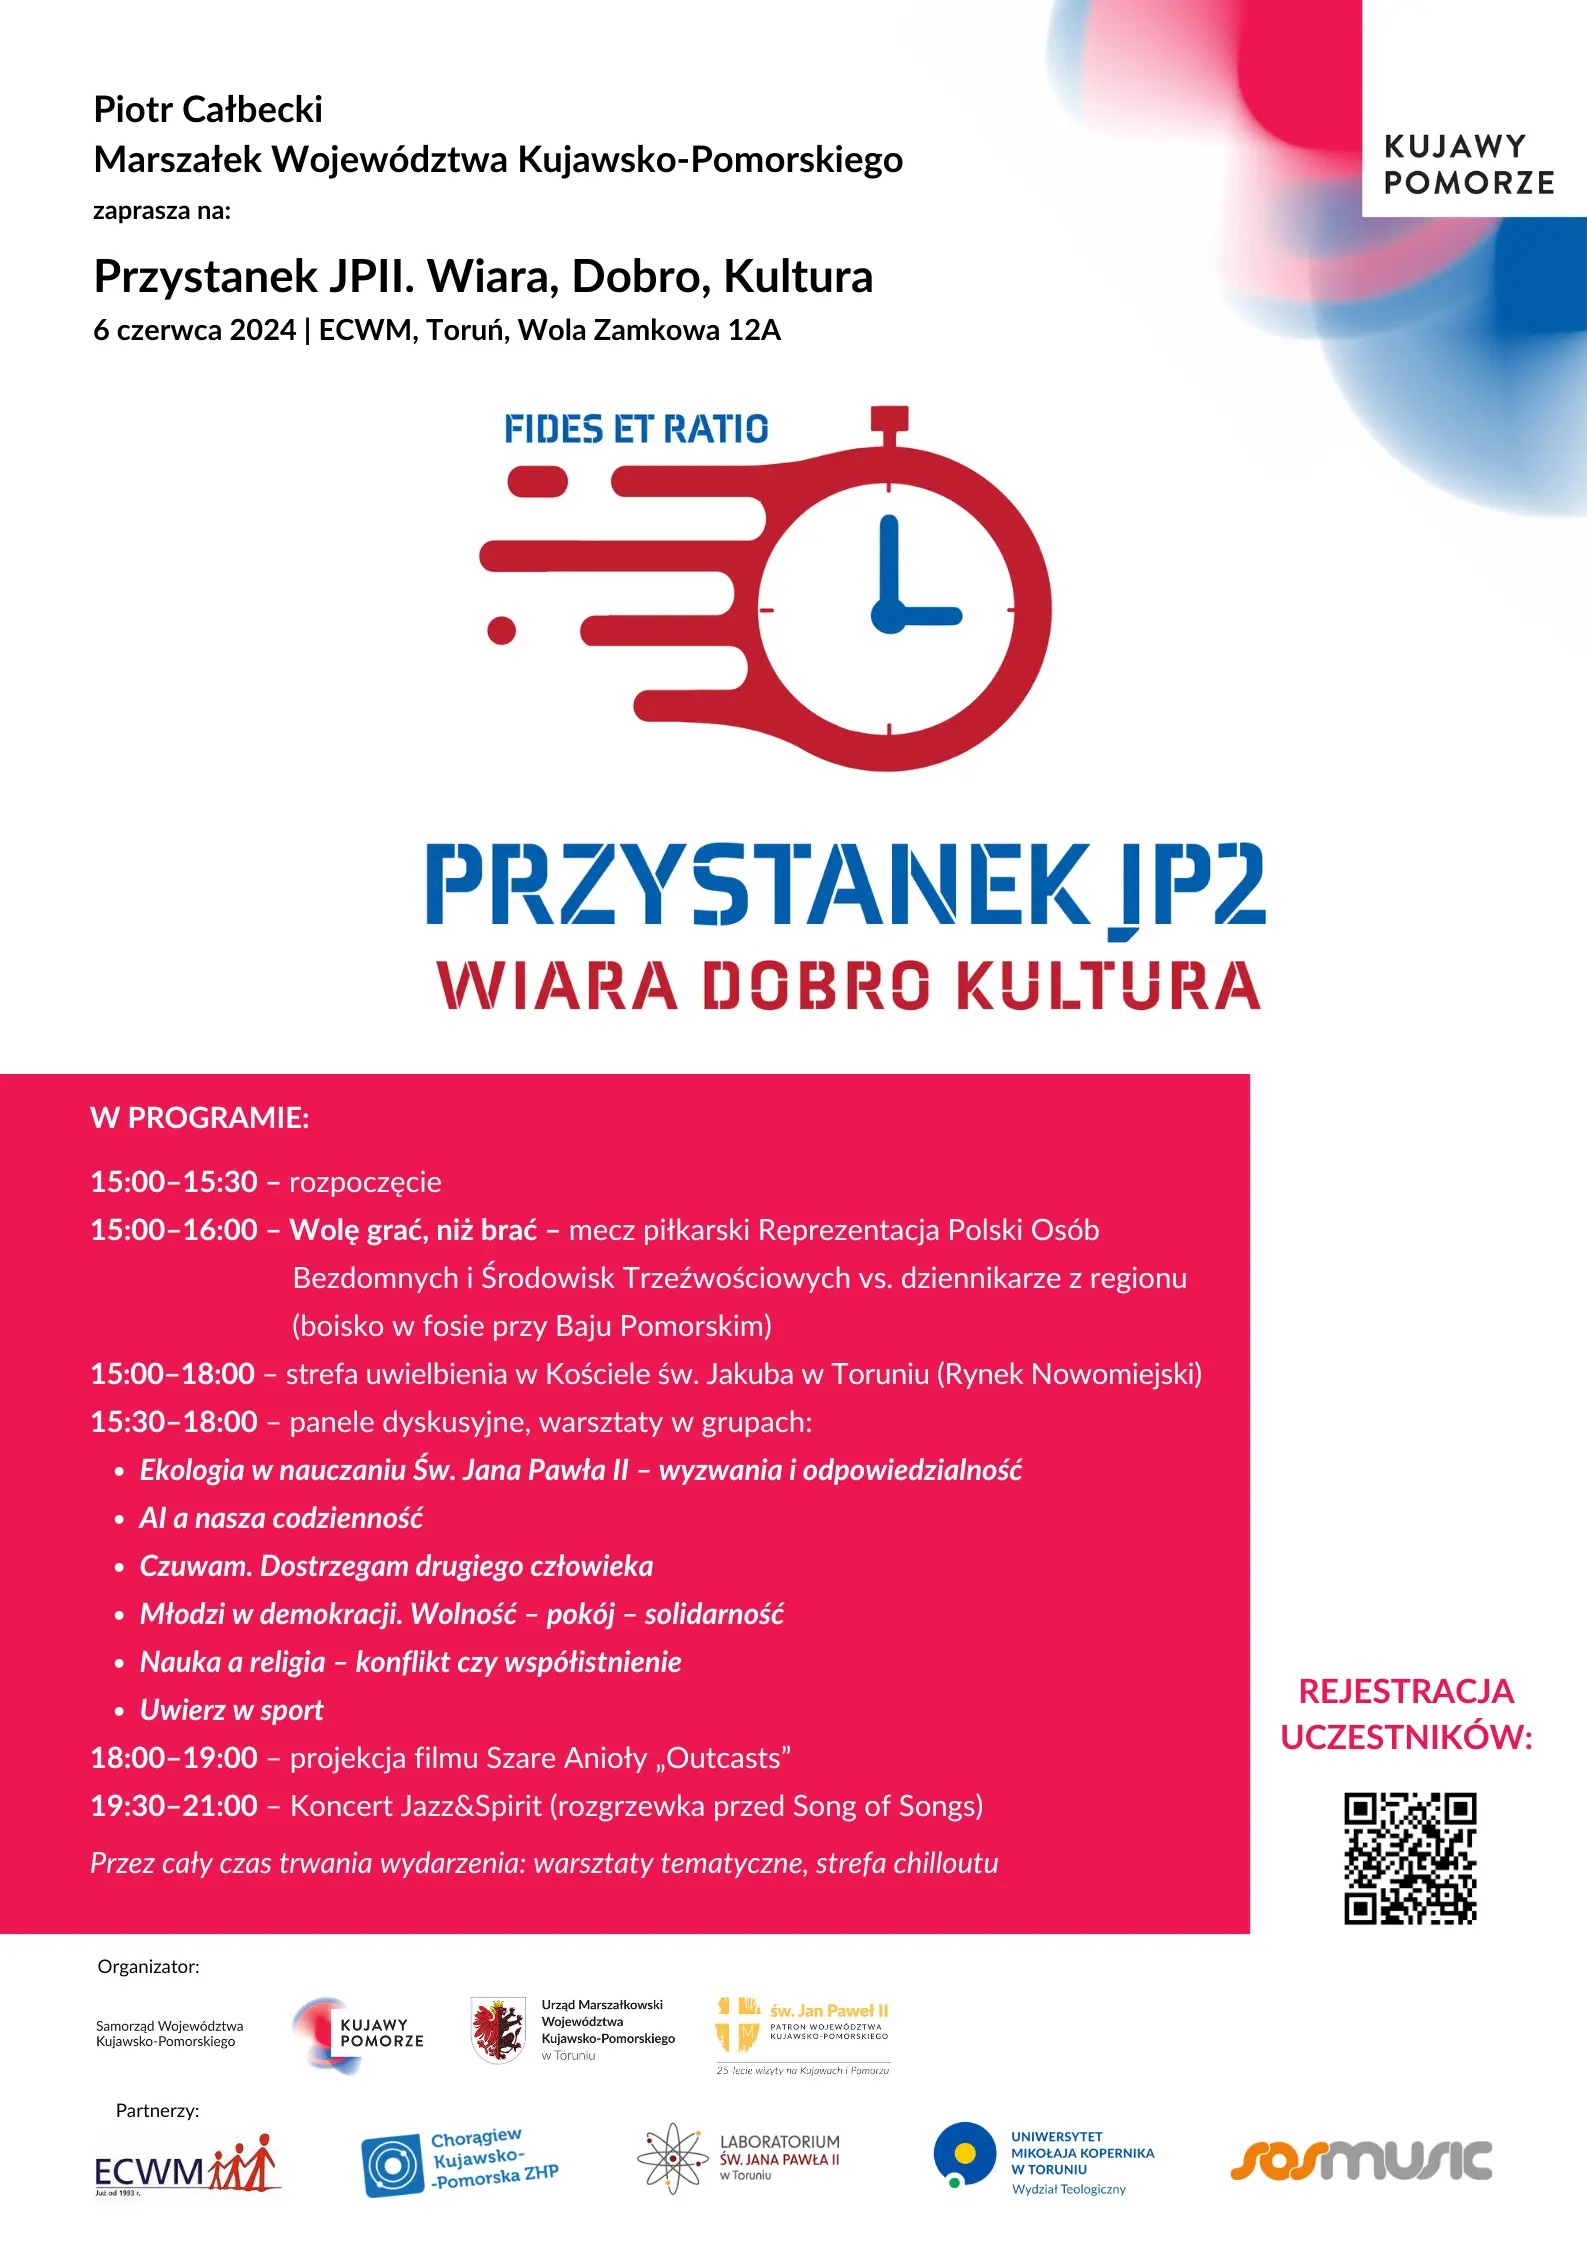 Plakat informacyjny Przystanku JP2 z programem wydarzenia.